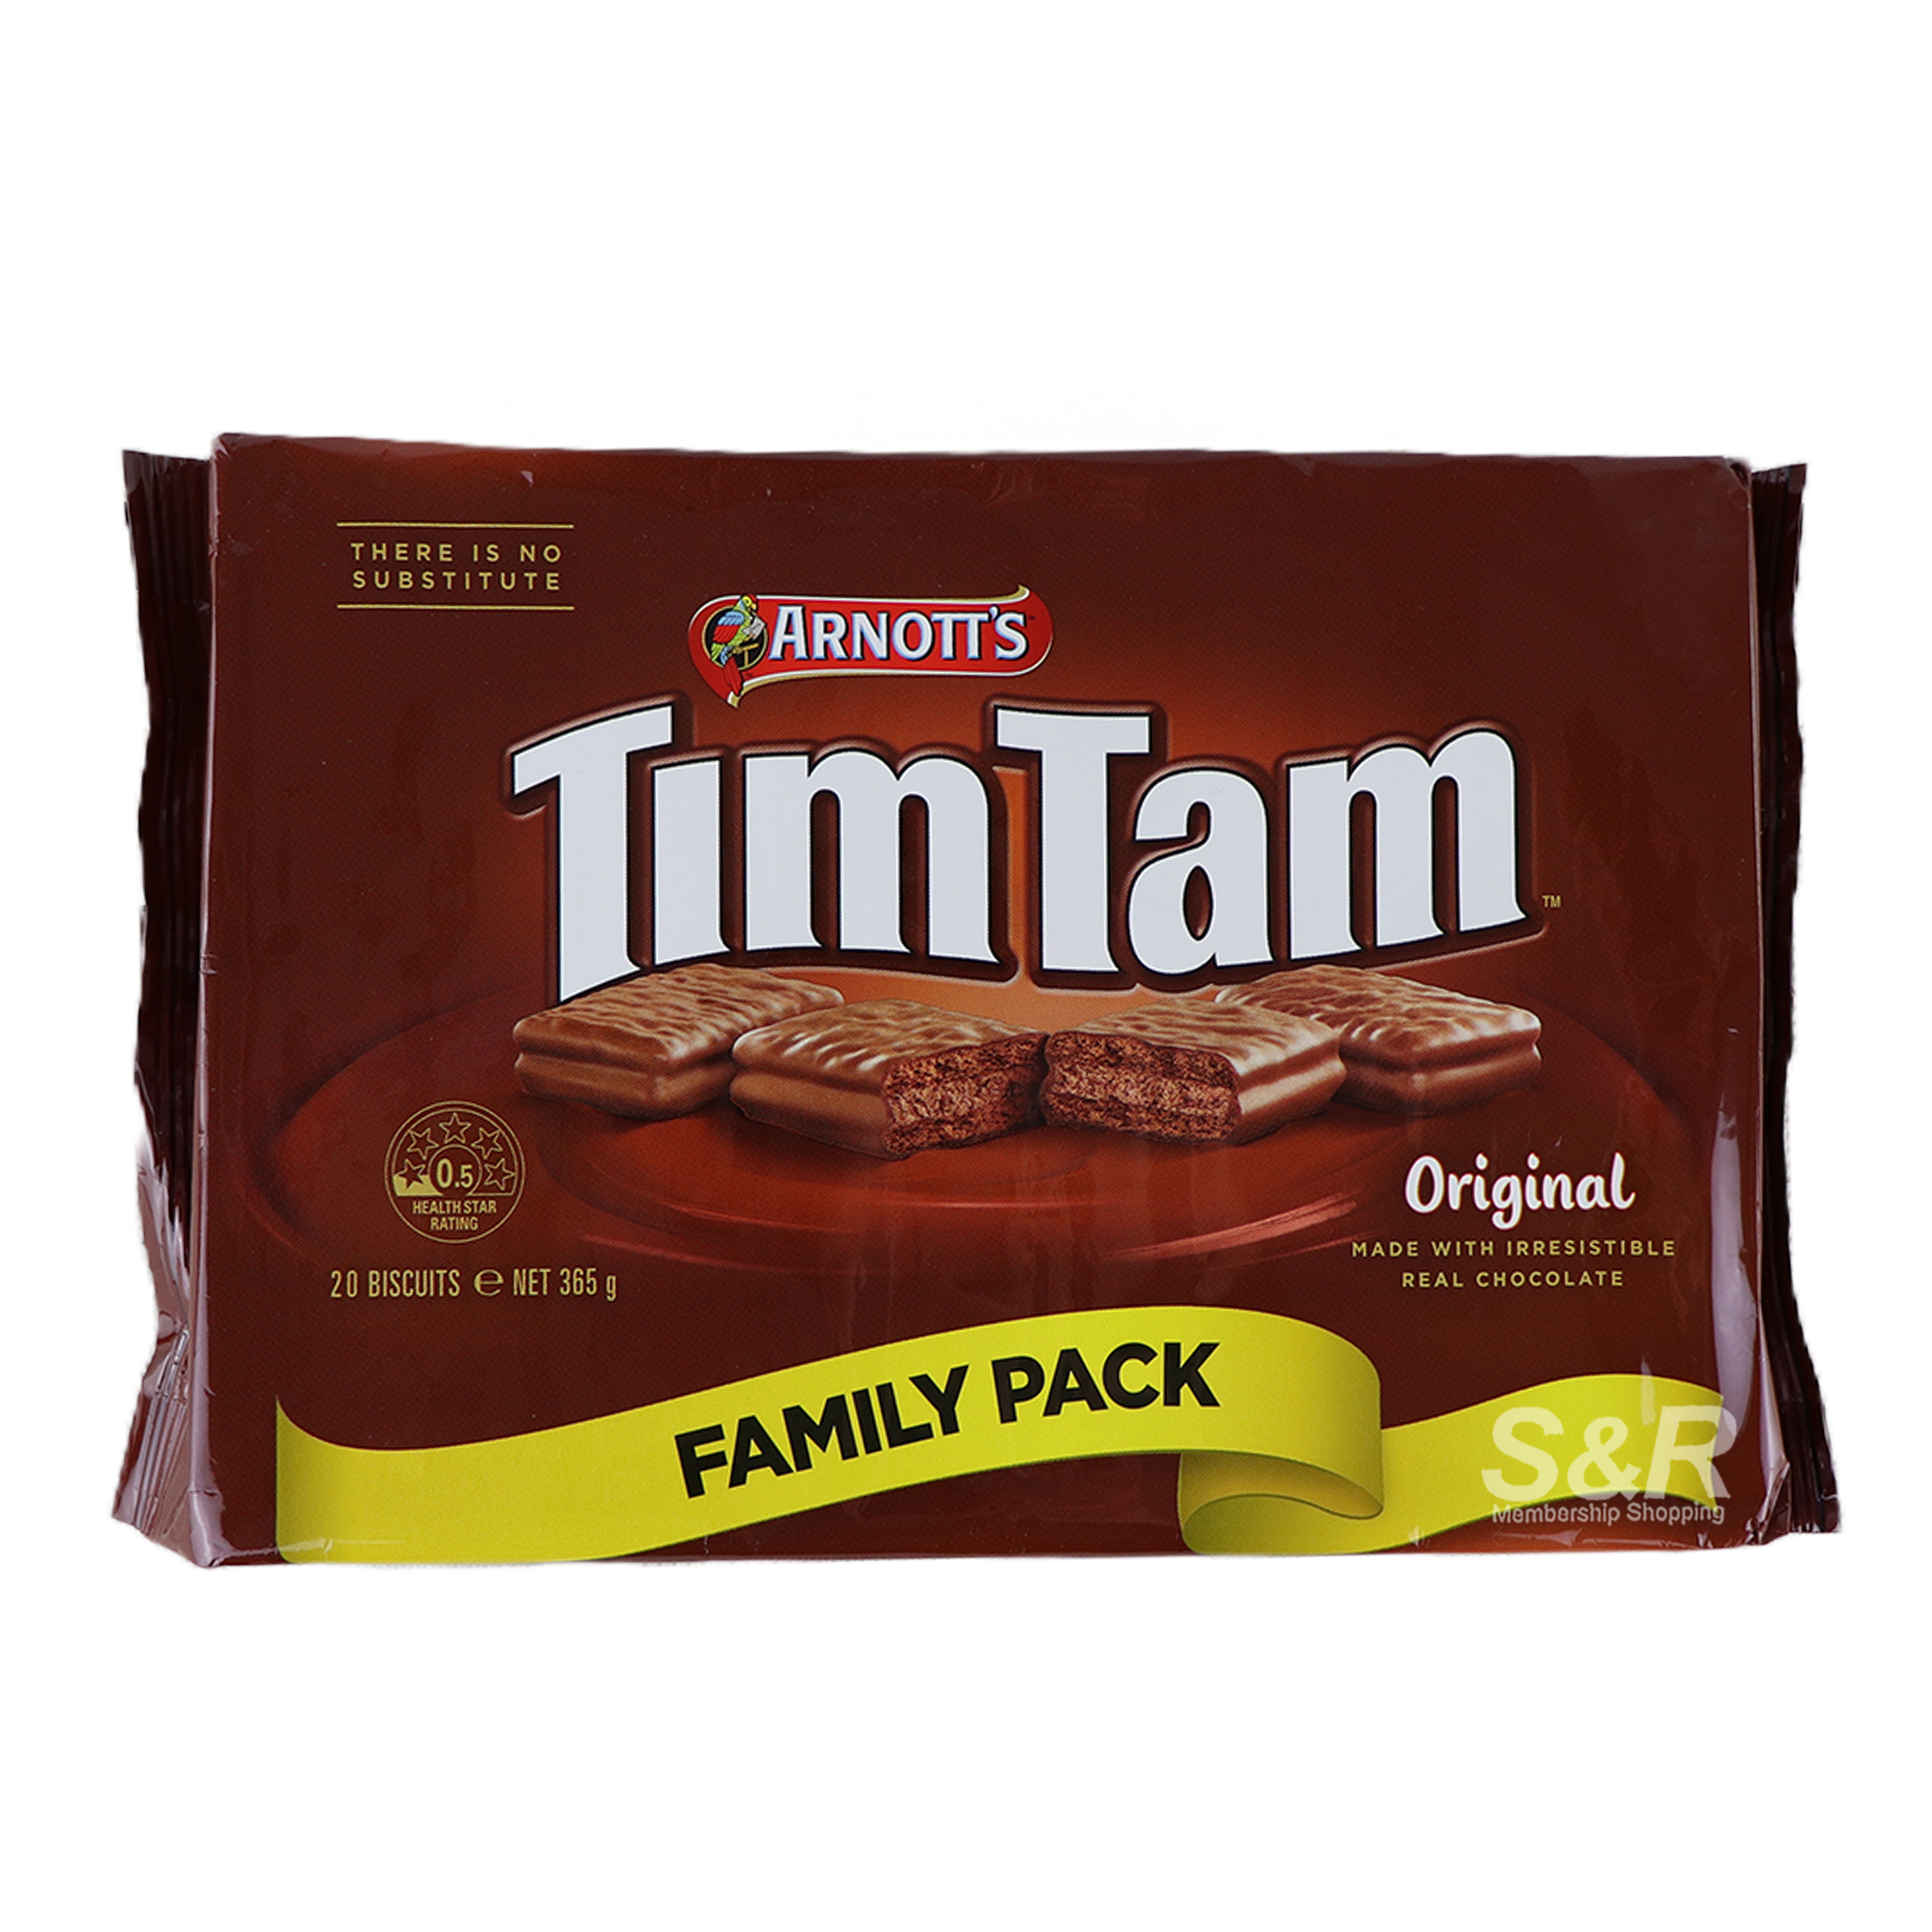 Arnotts TimTam Original Family Pack 365g